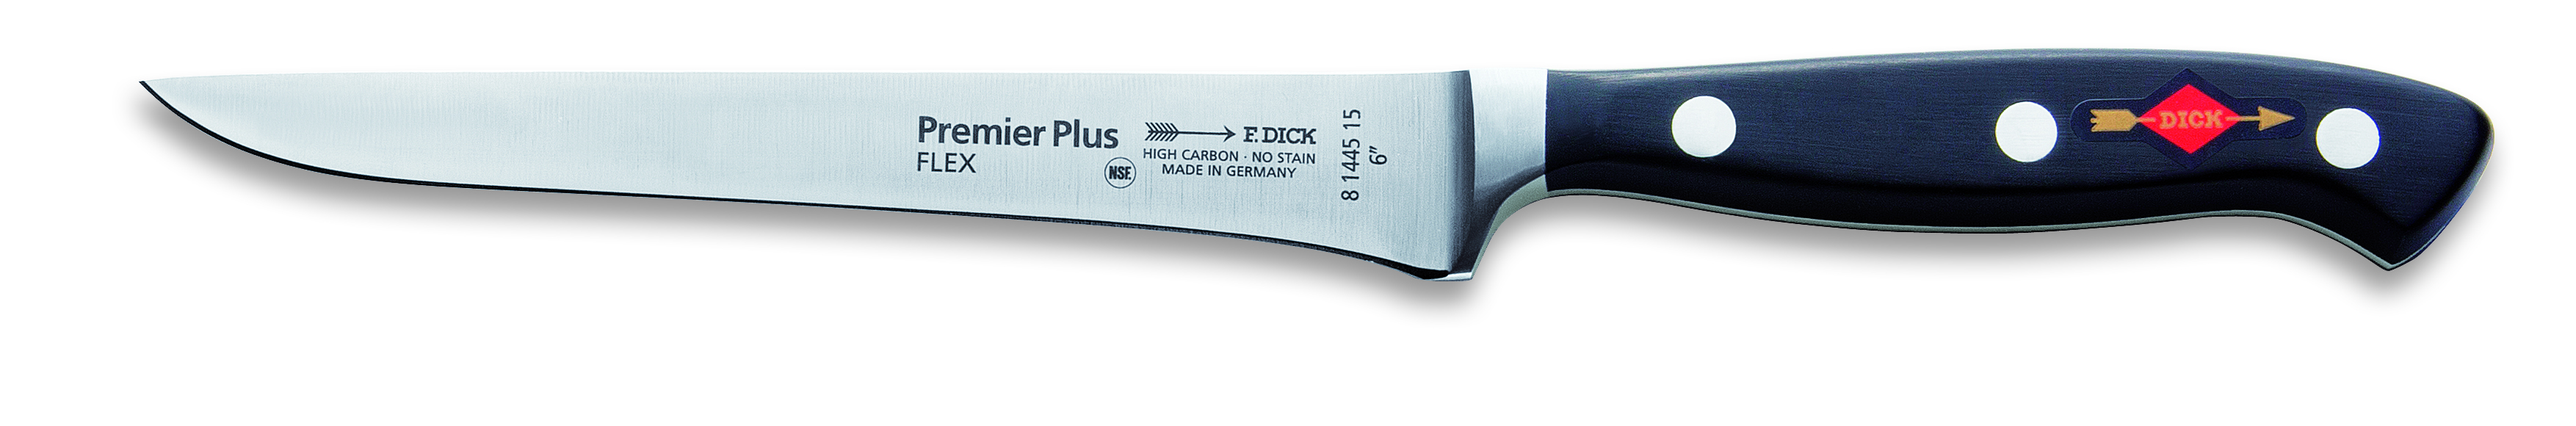 Vykosťovací nůž Premier Plus kovaný, flexibilní v délce 15 cm